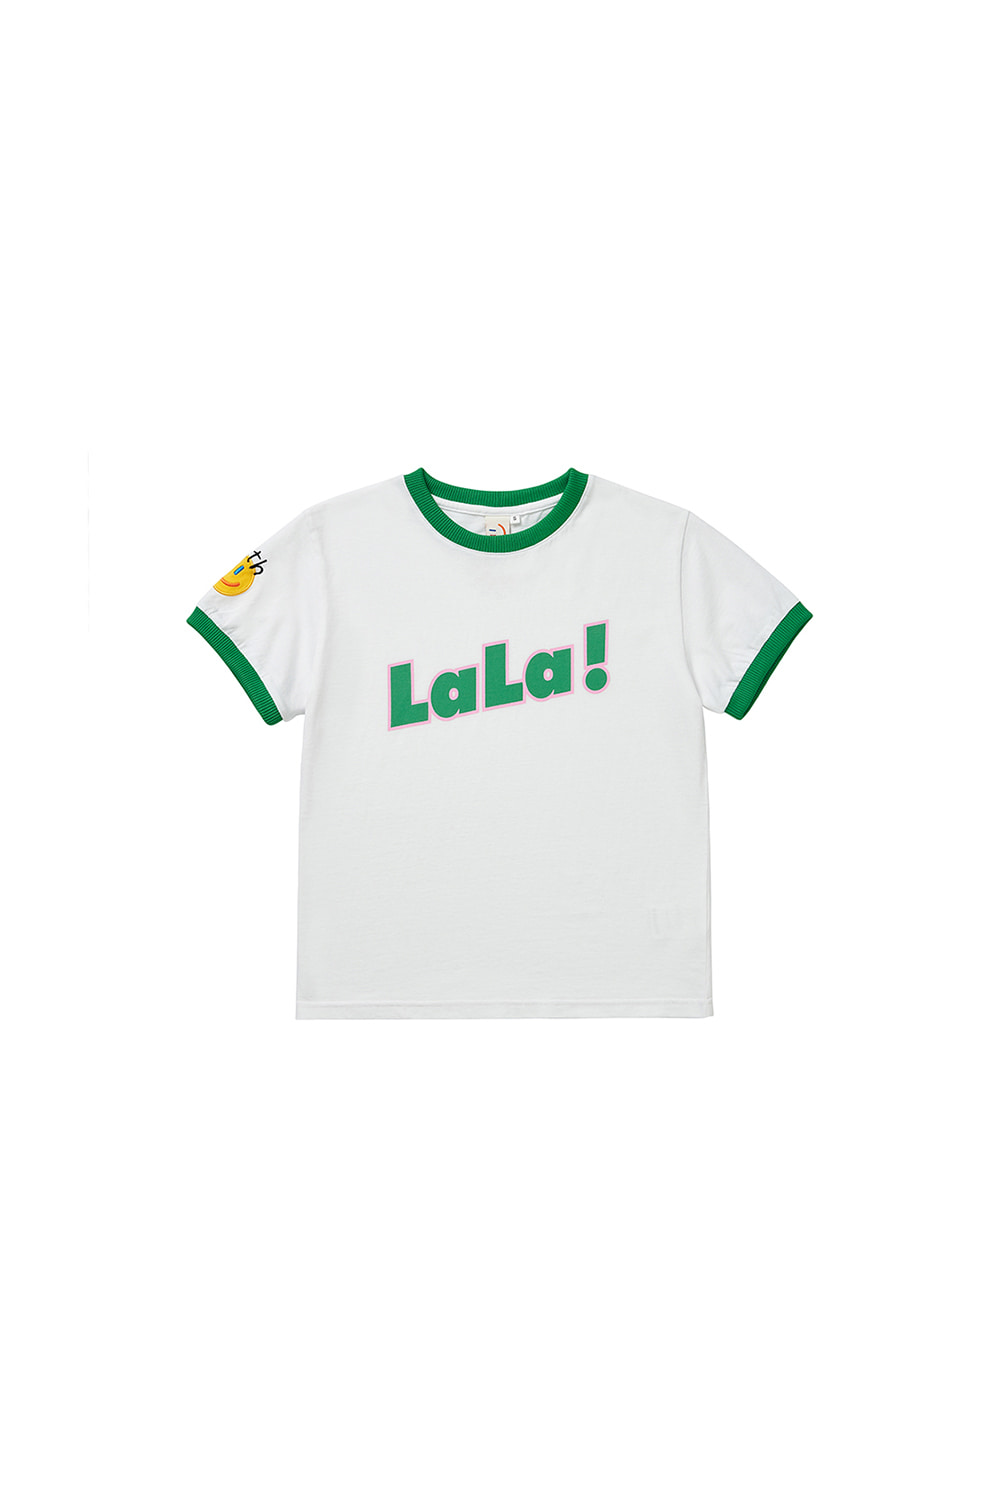 LaLa Kids Twotone T-shirt [Green]